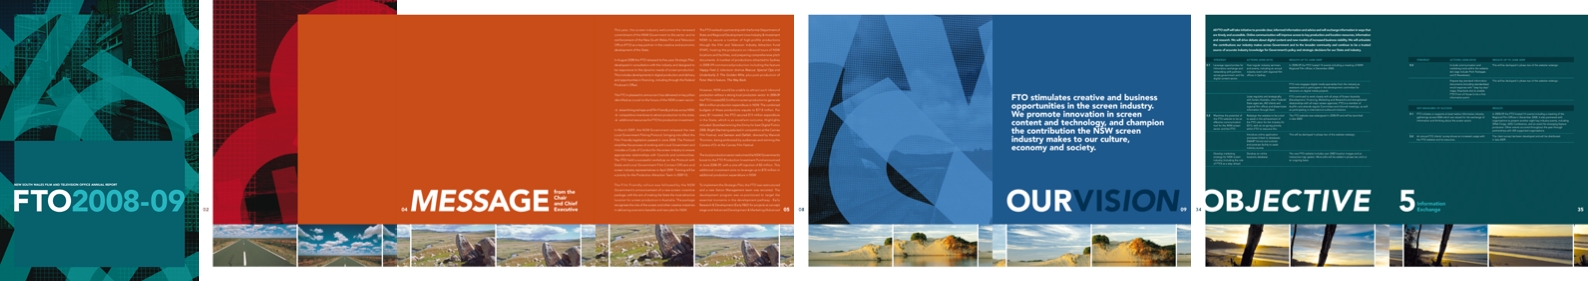 FTO 2009 Annual Report 2008-2009